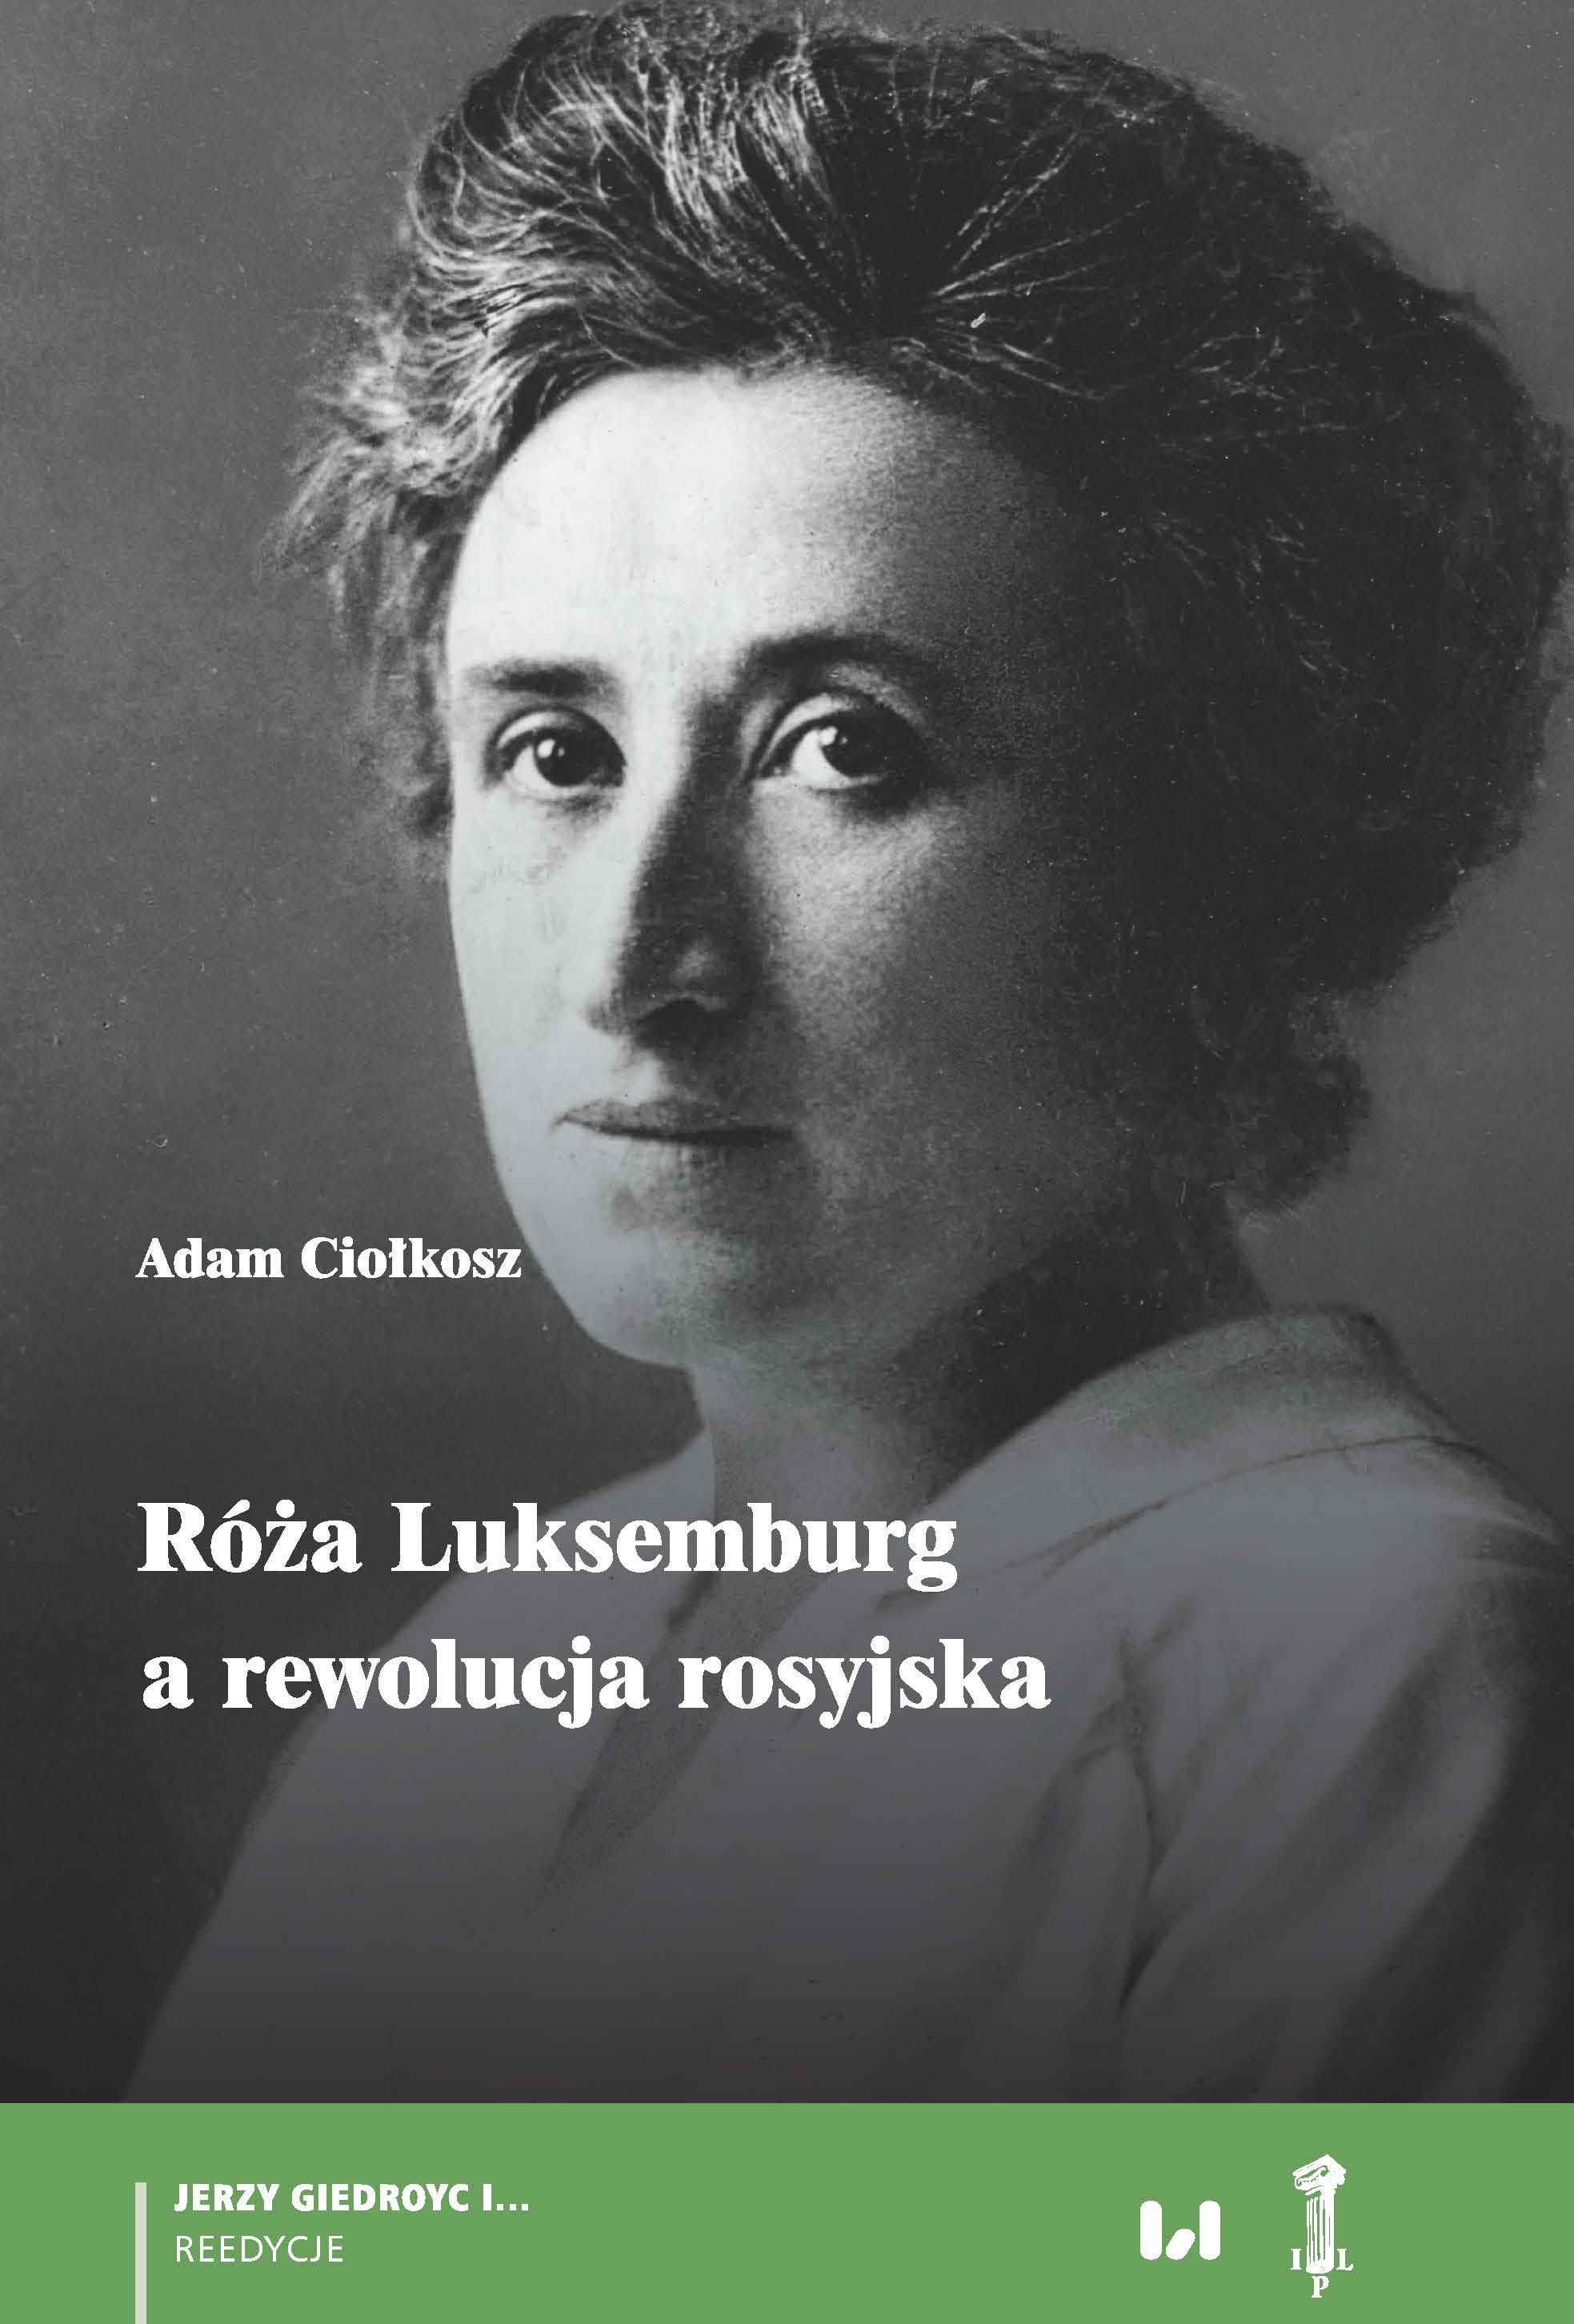 Rosa Luxemburg and Bolshevik Revolution